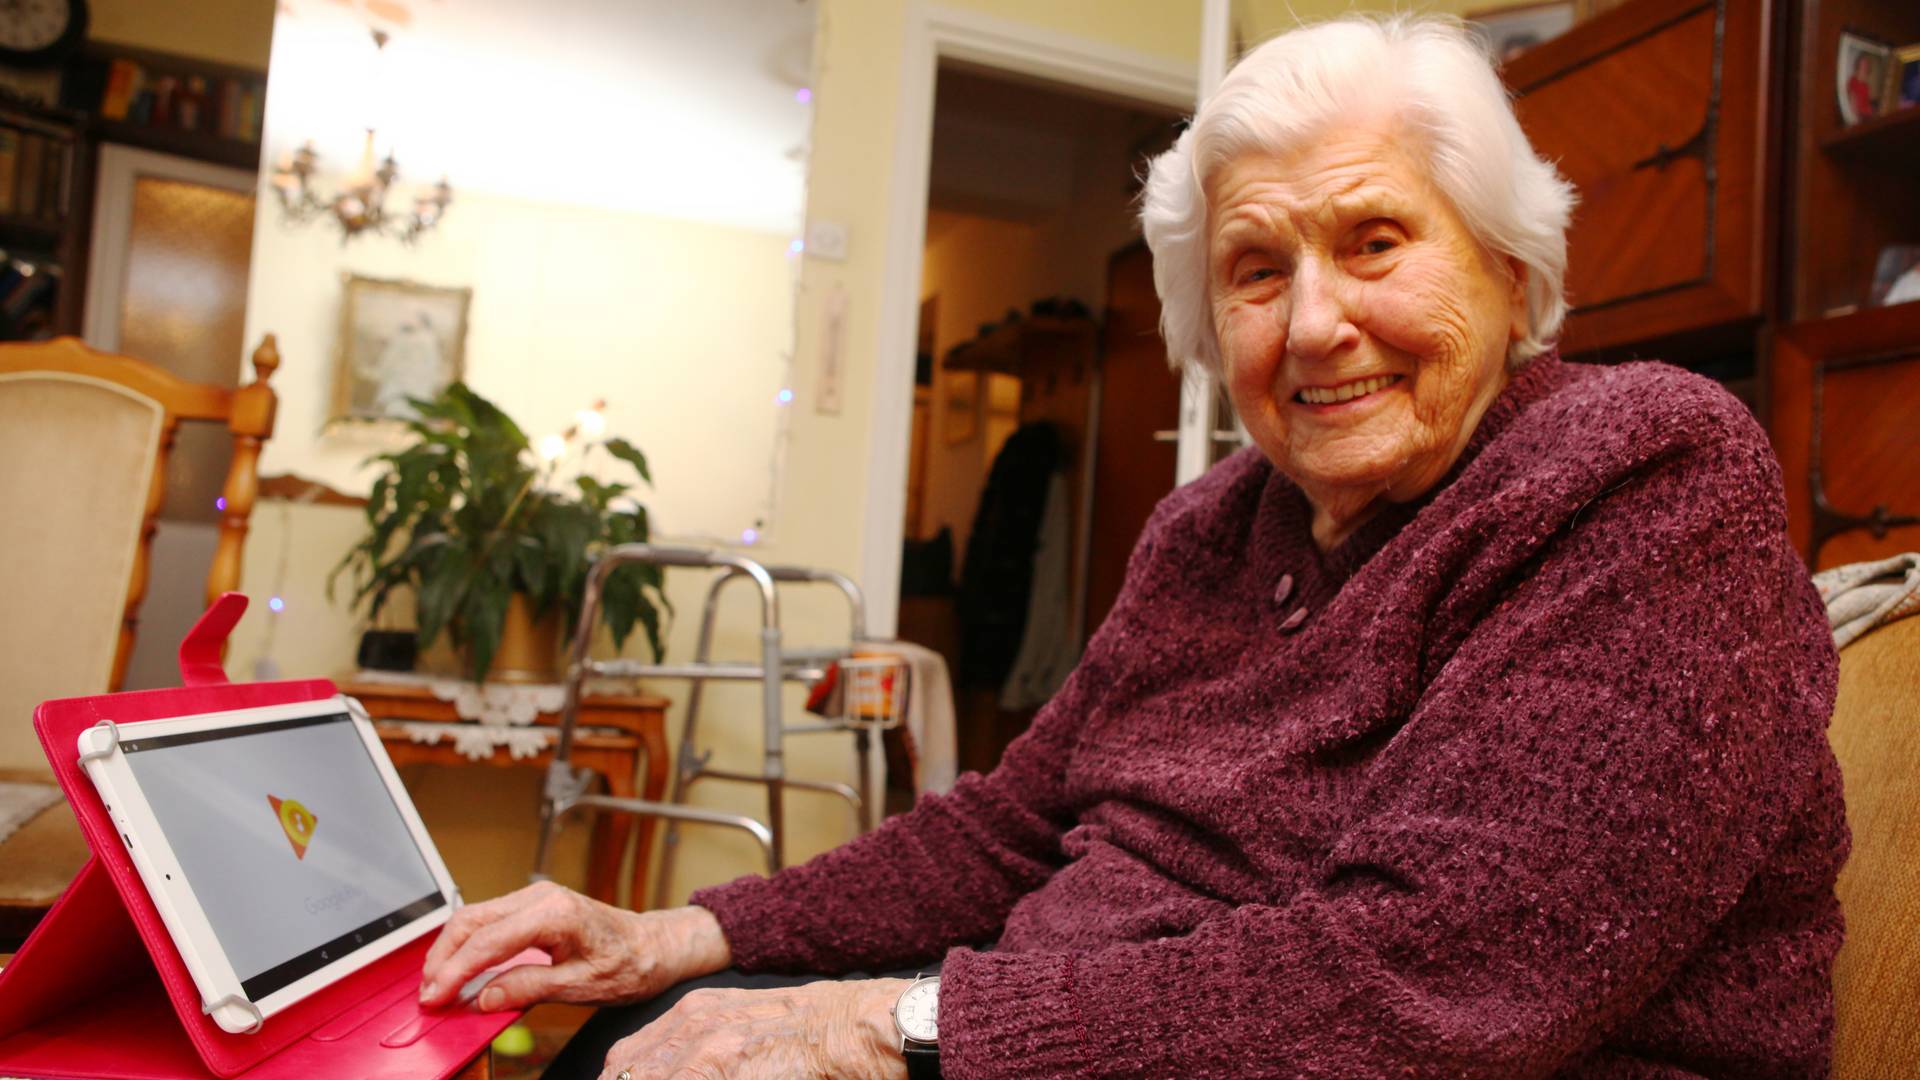 Preminula najstarija žena u Srbiji - baka Nadežda je imala 109 godina i veoma uzbudljiv život